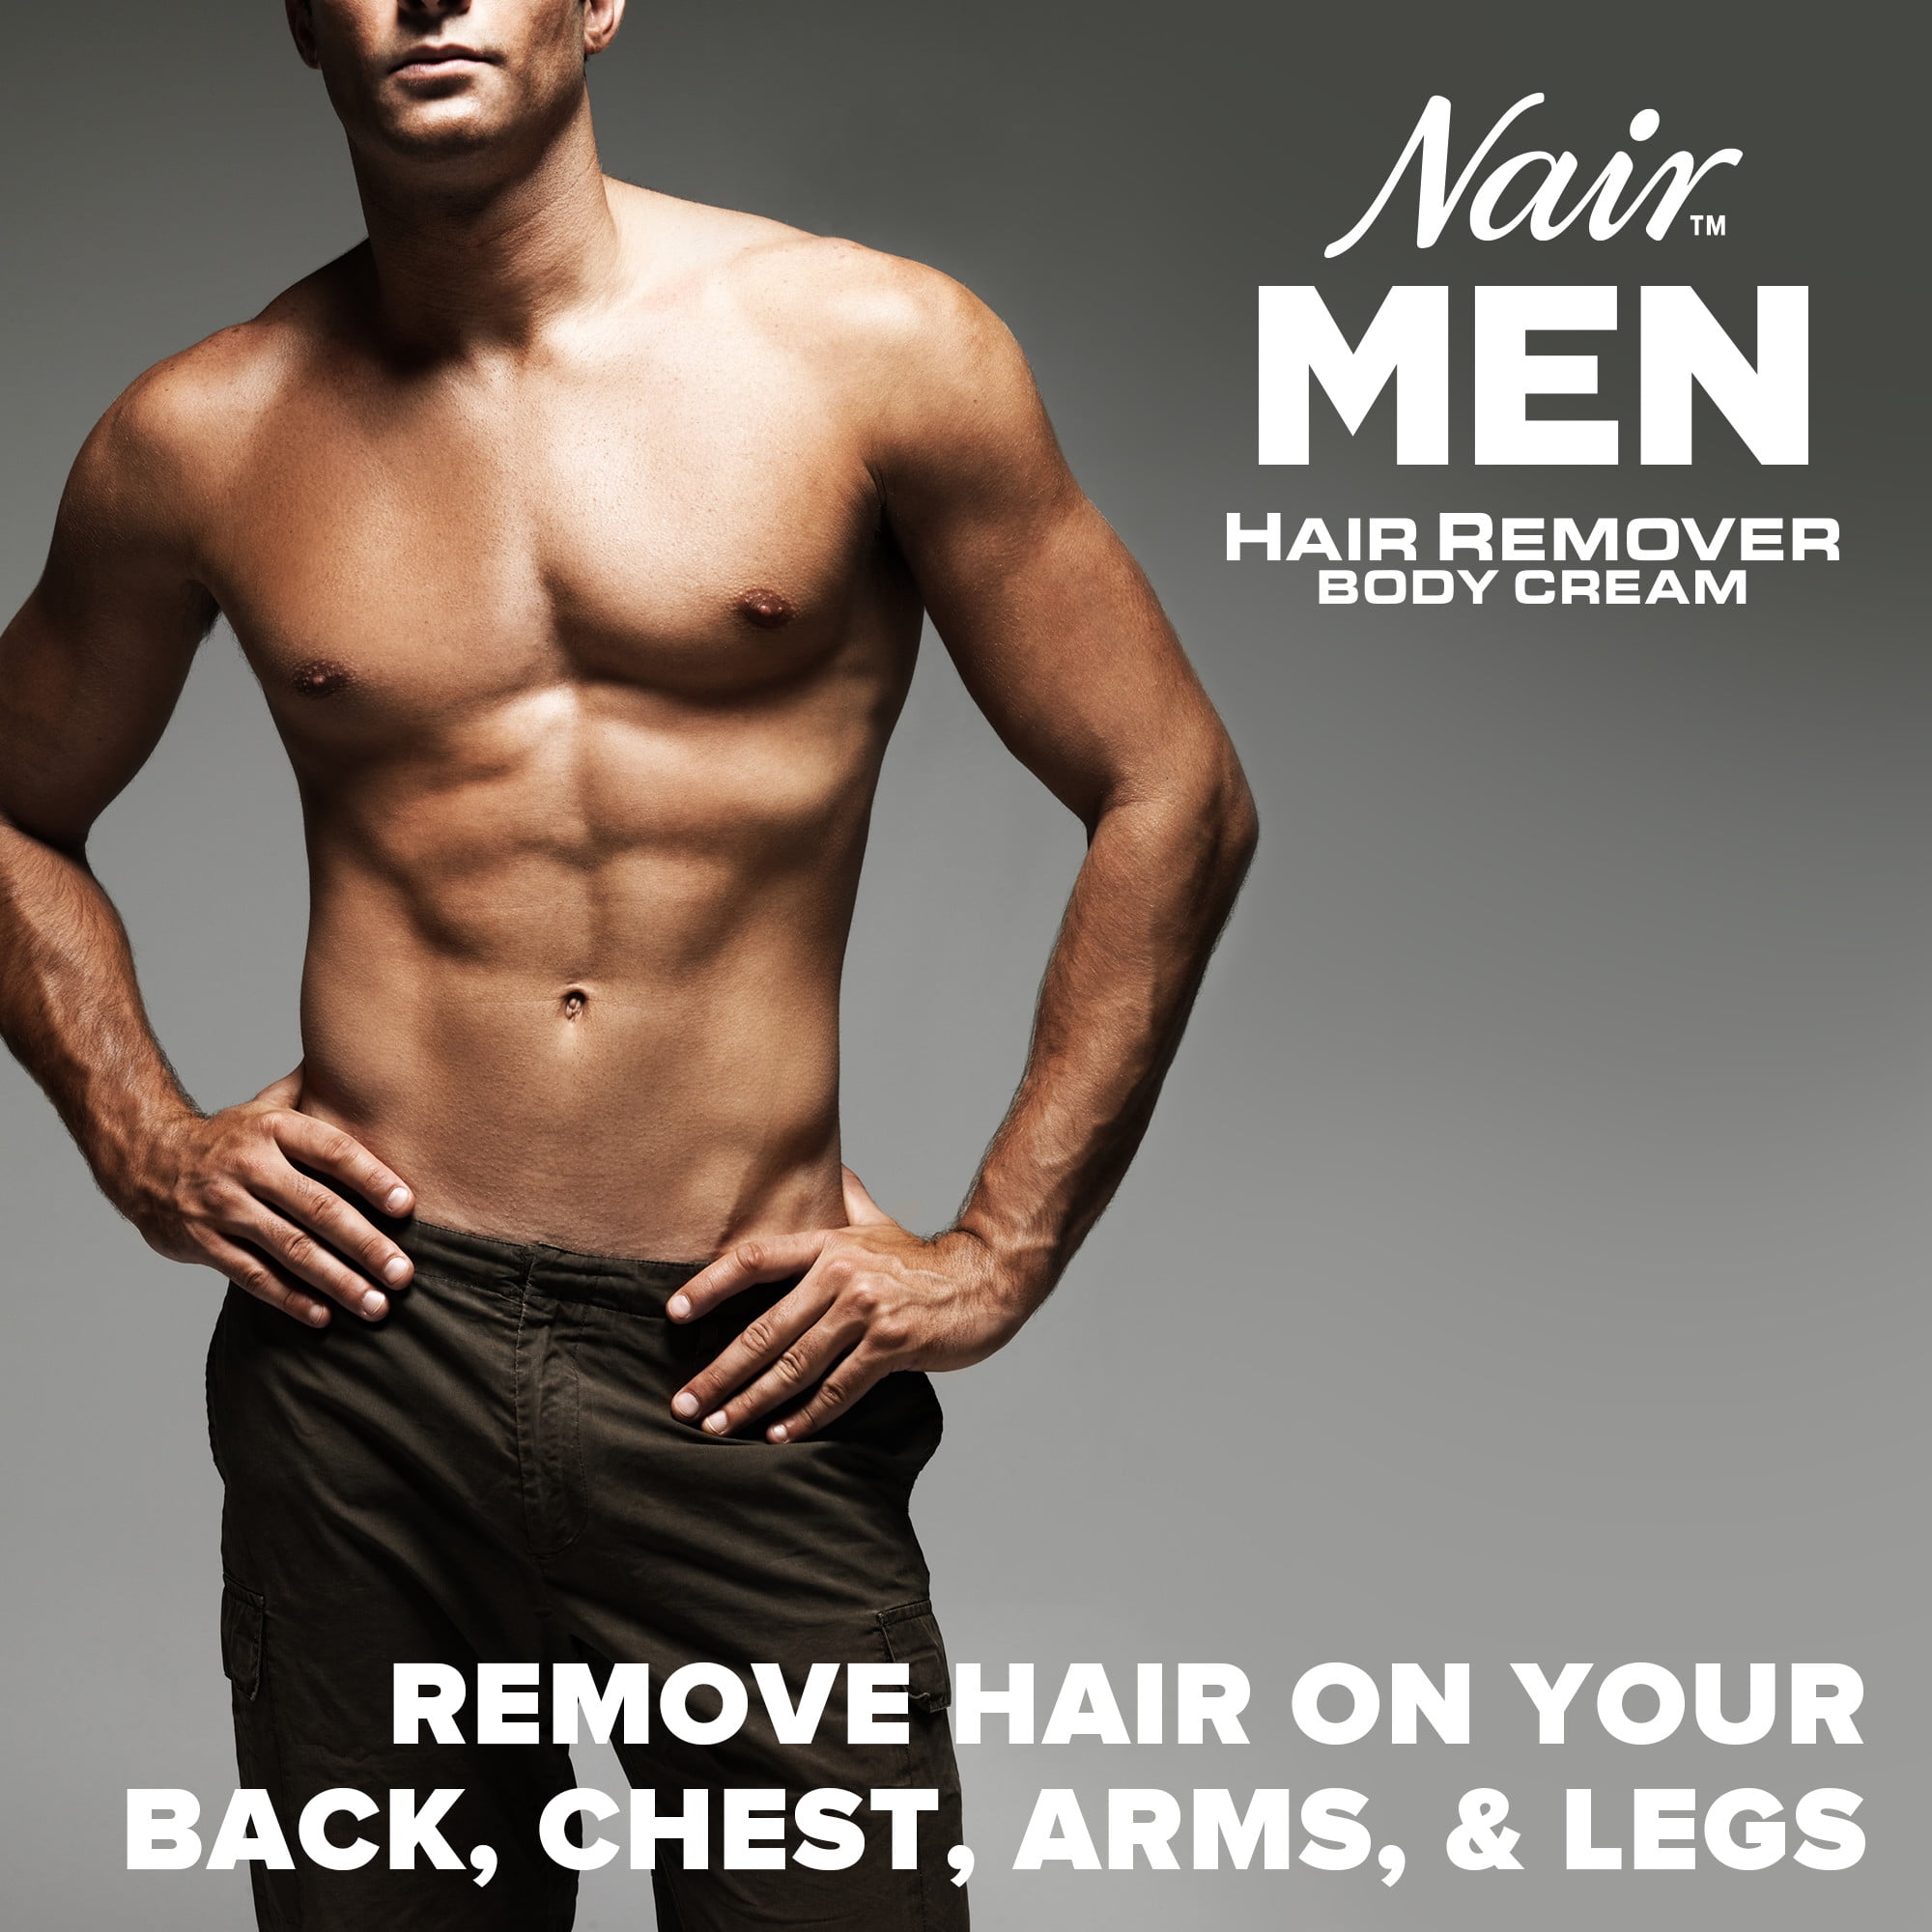 Nair Men Hair Remover Body Cream, Body Hair Remover for Men, 13 Oz Bottle -  